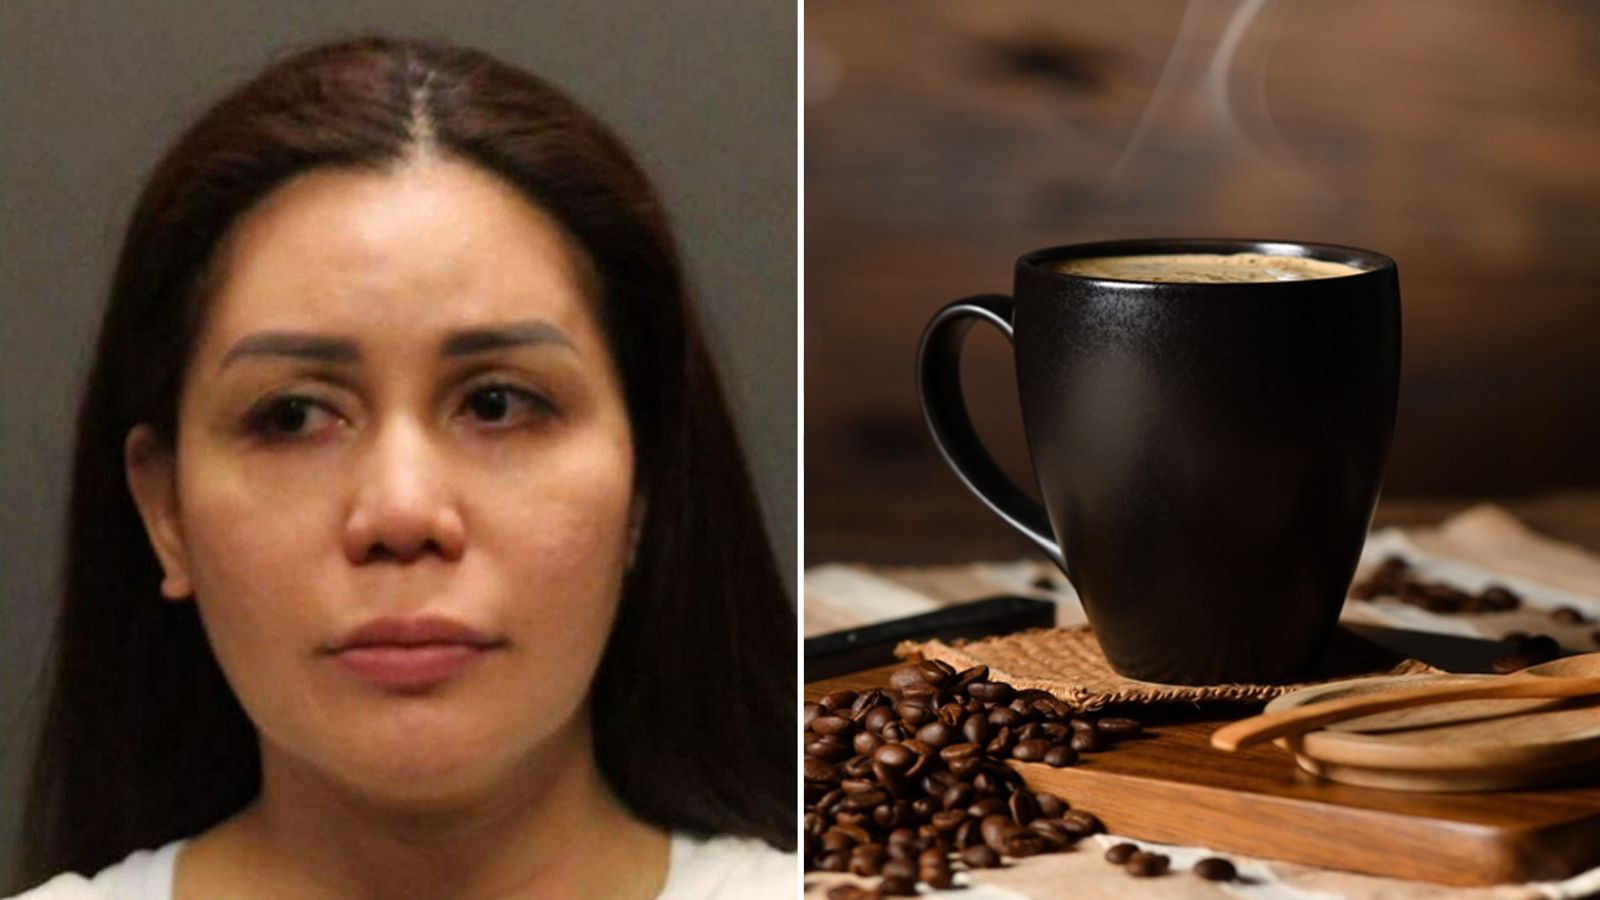 Съпруга, обвинена в отравяне на кафето на съпруга си с белина в продължение на месеци